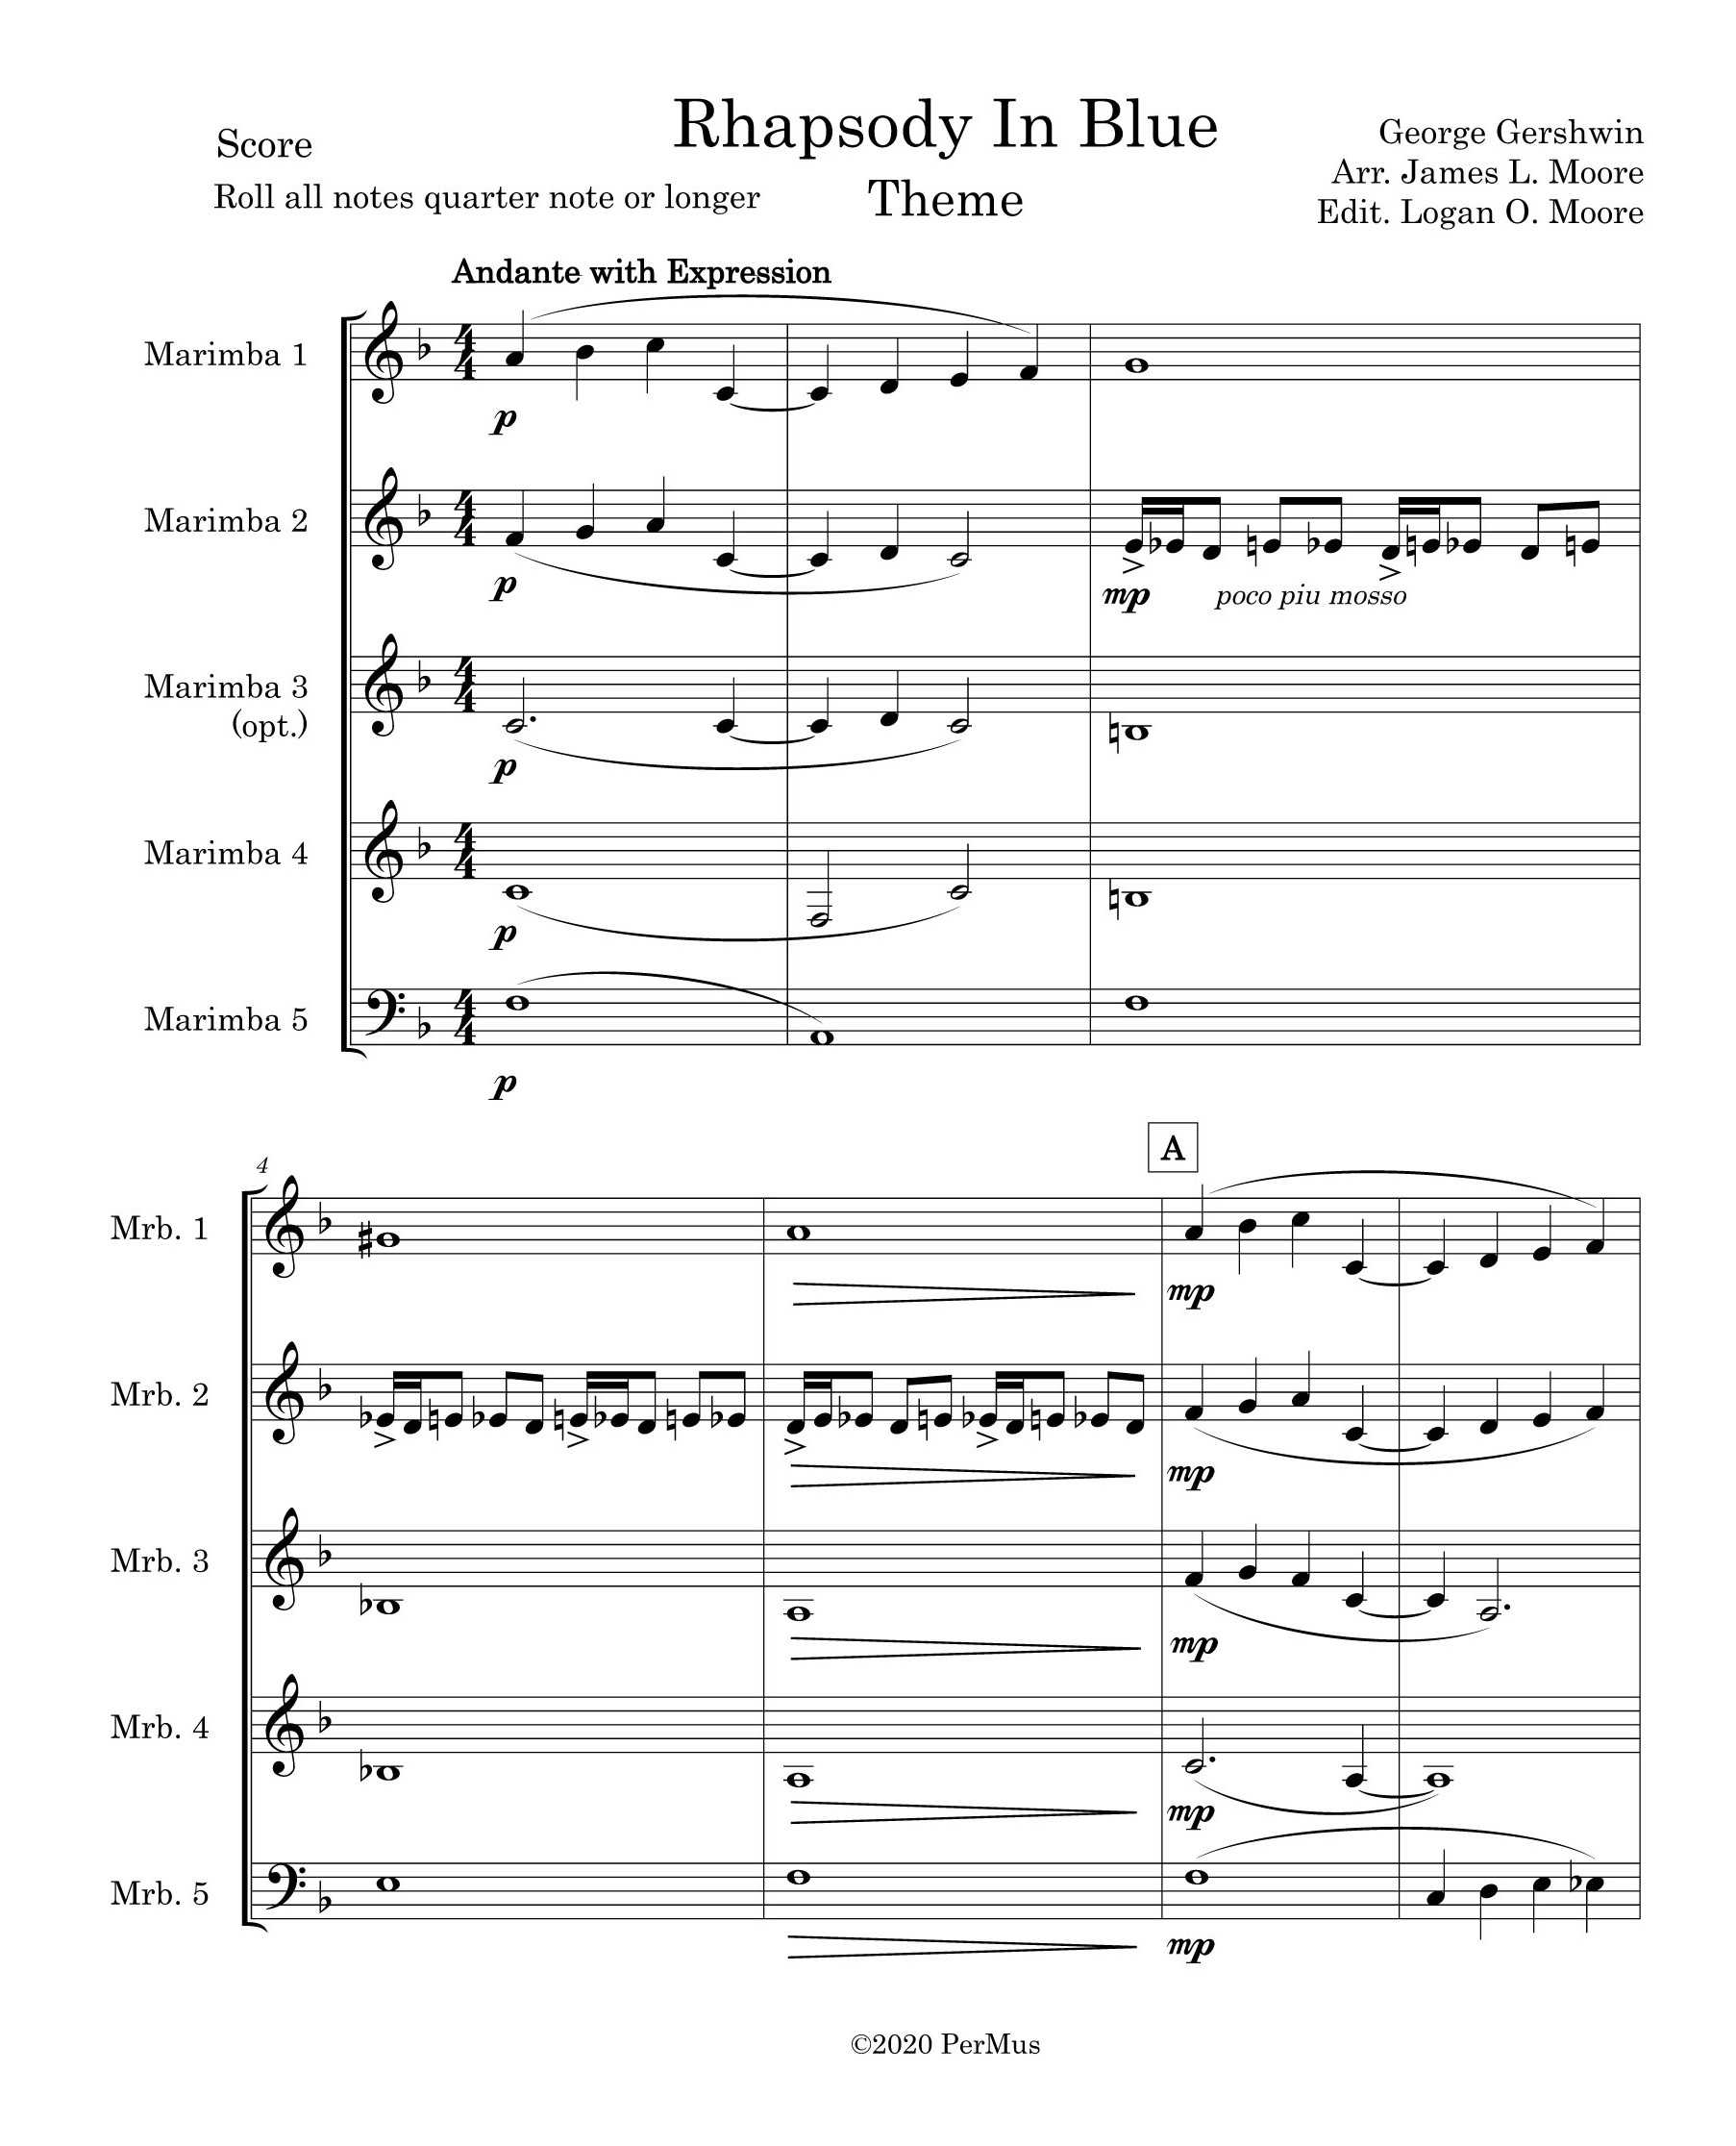 Rhapsody in Blue Theme by Gershwin arr. James Moore